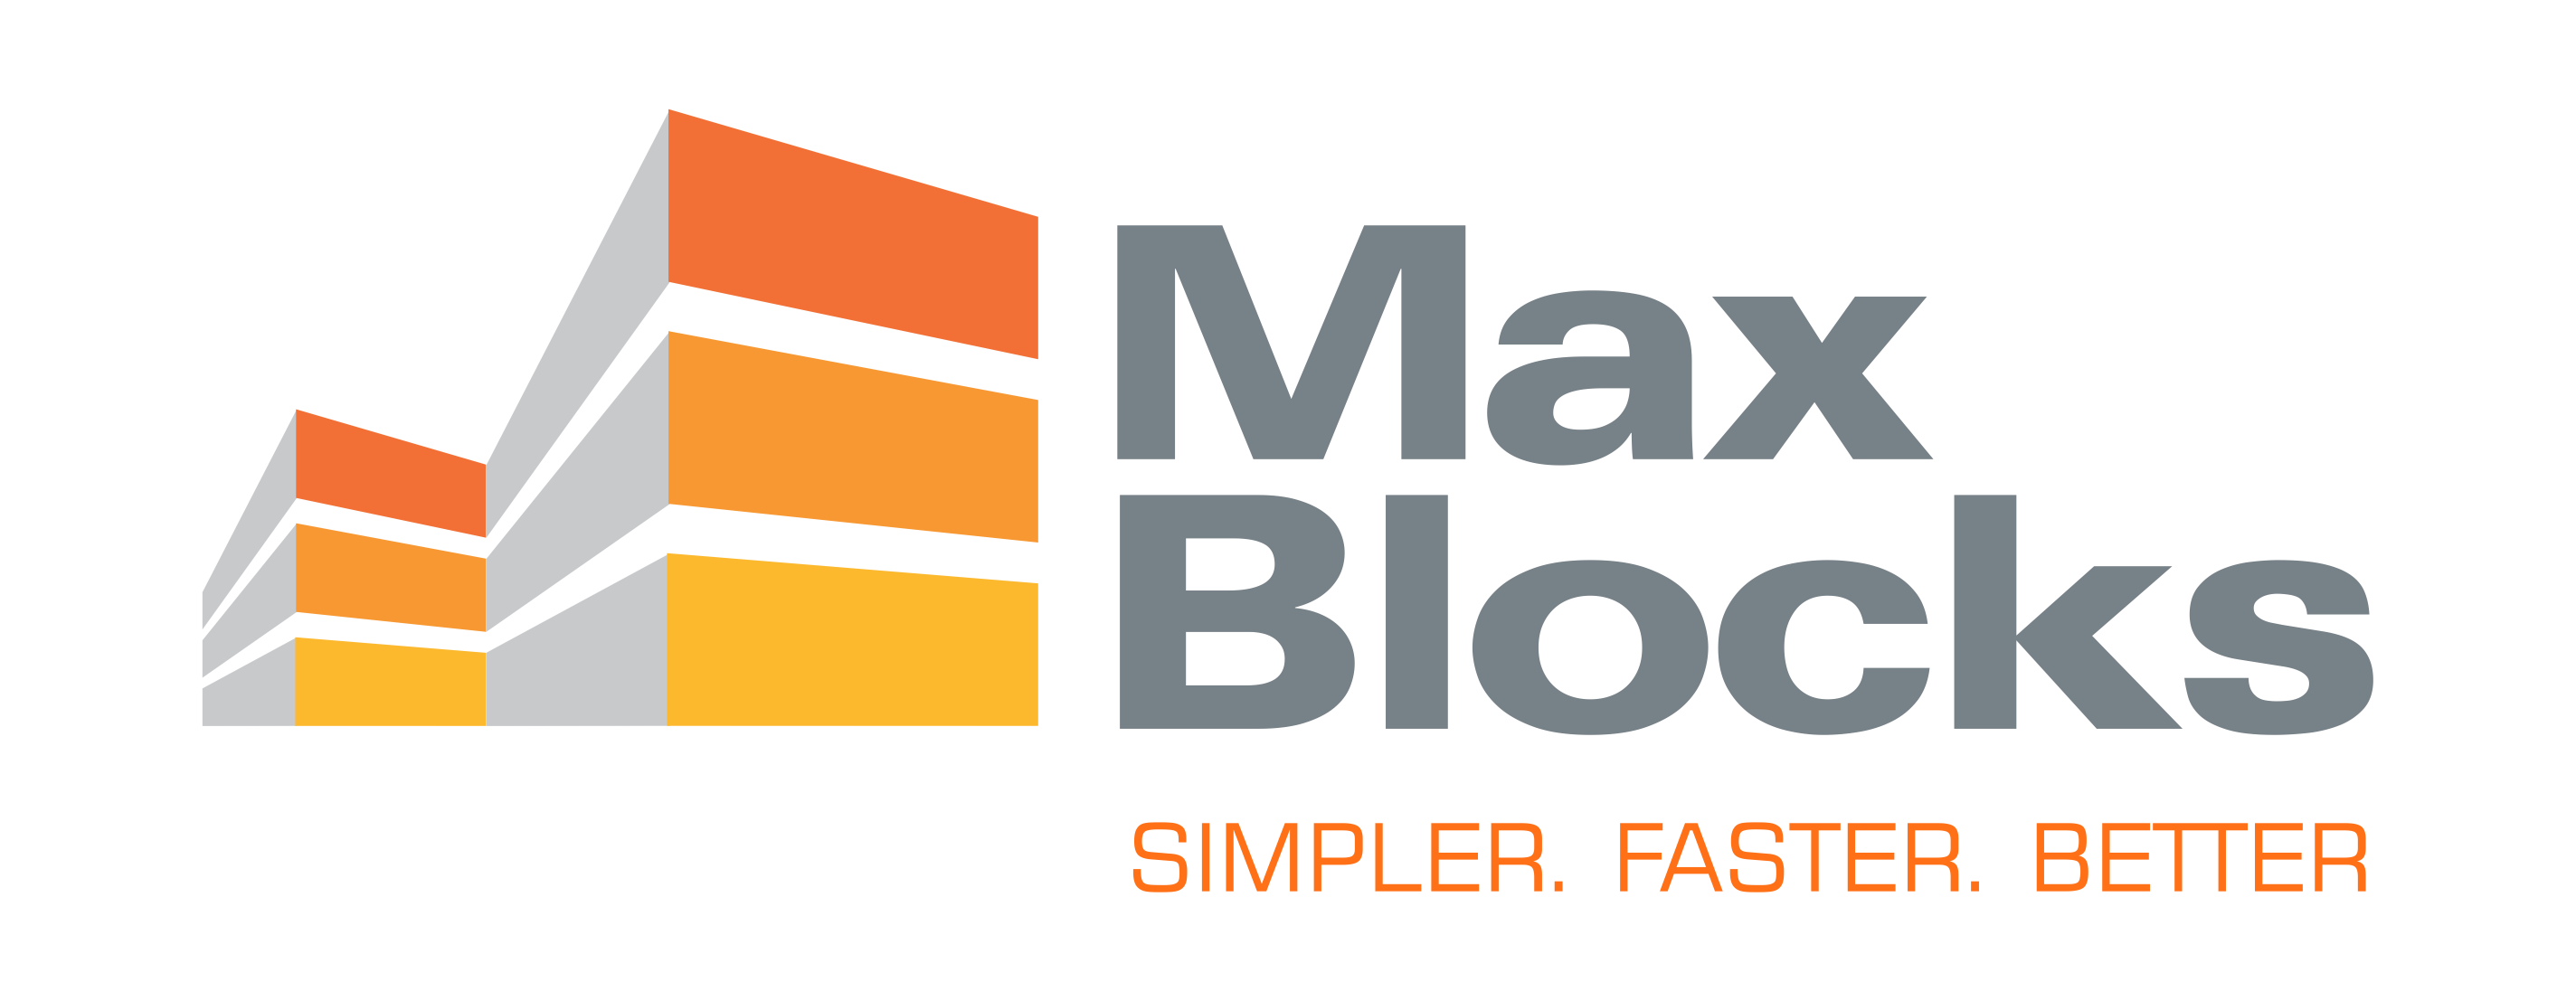 Max Blocks